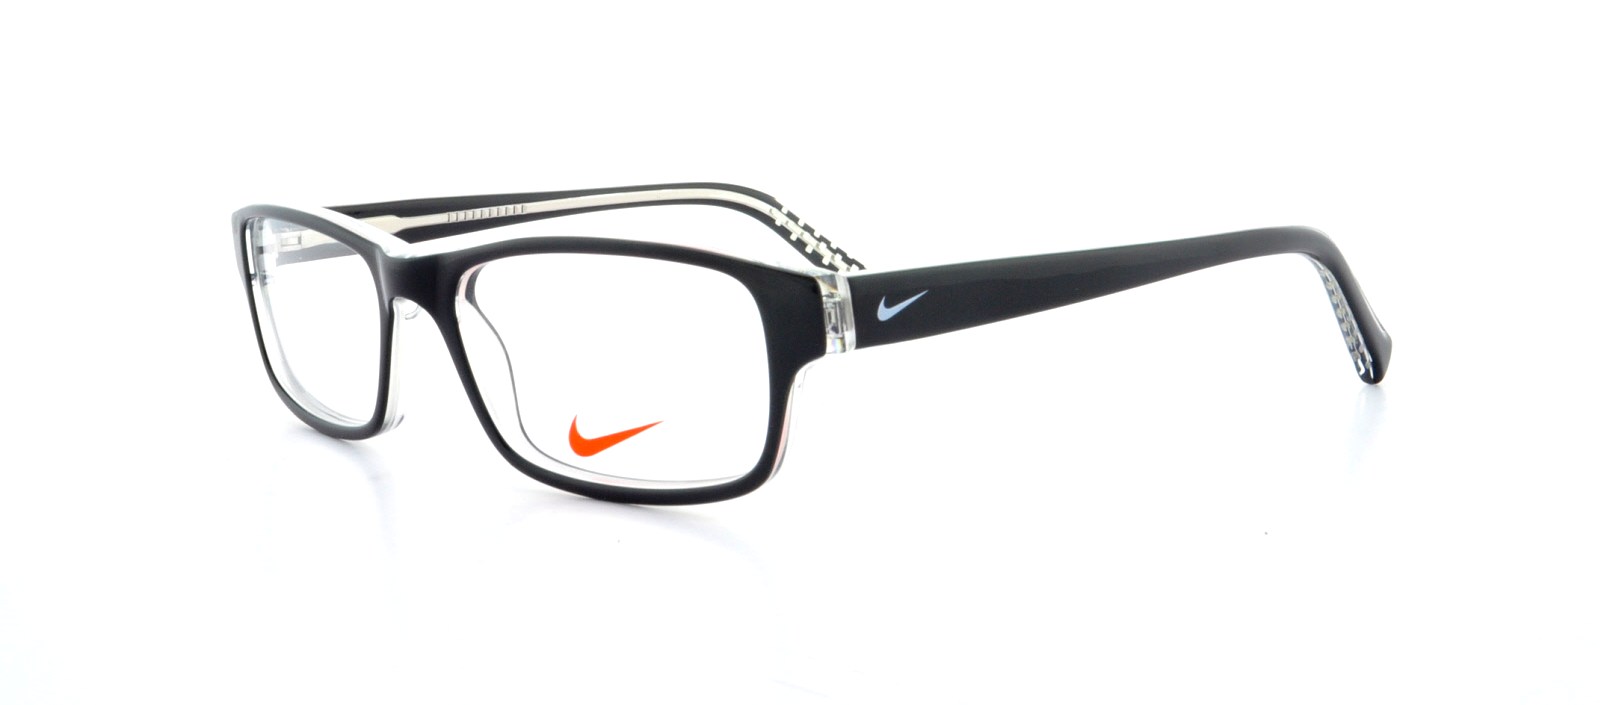 medios de comunicación pánico Inconsciente Designer Frames Outlet. Nike Eyeglasses 5507